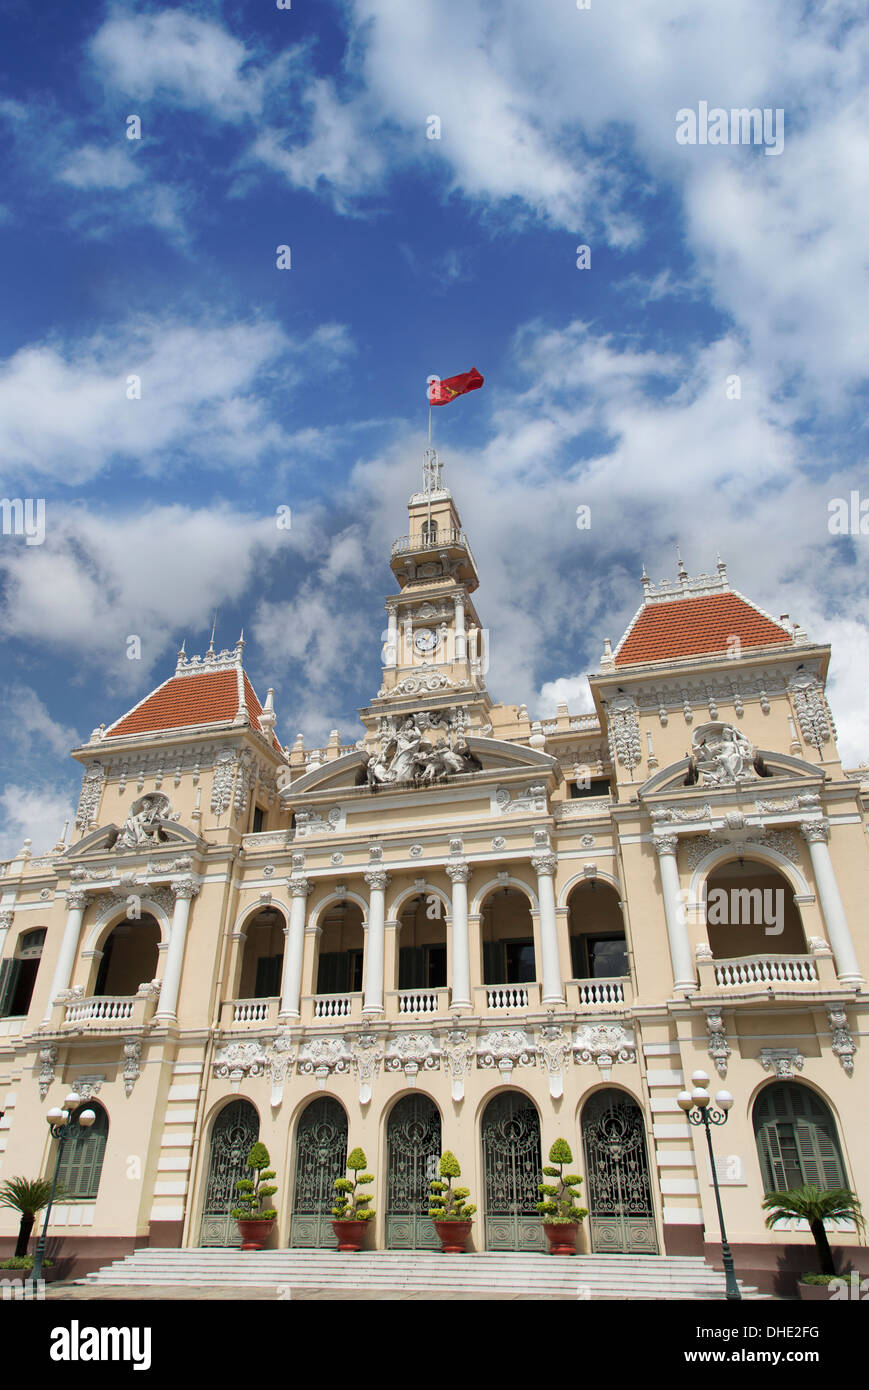 City Hall of Ho Chi Minh in Ho Chi Minh City, Vietnam. Stock Photo